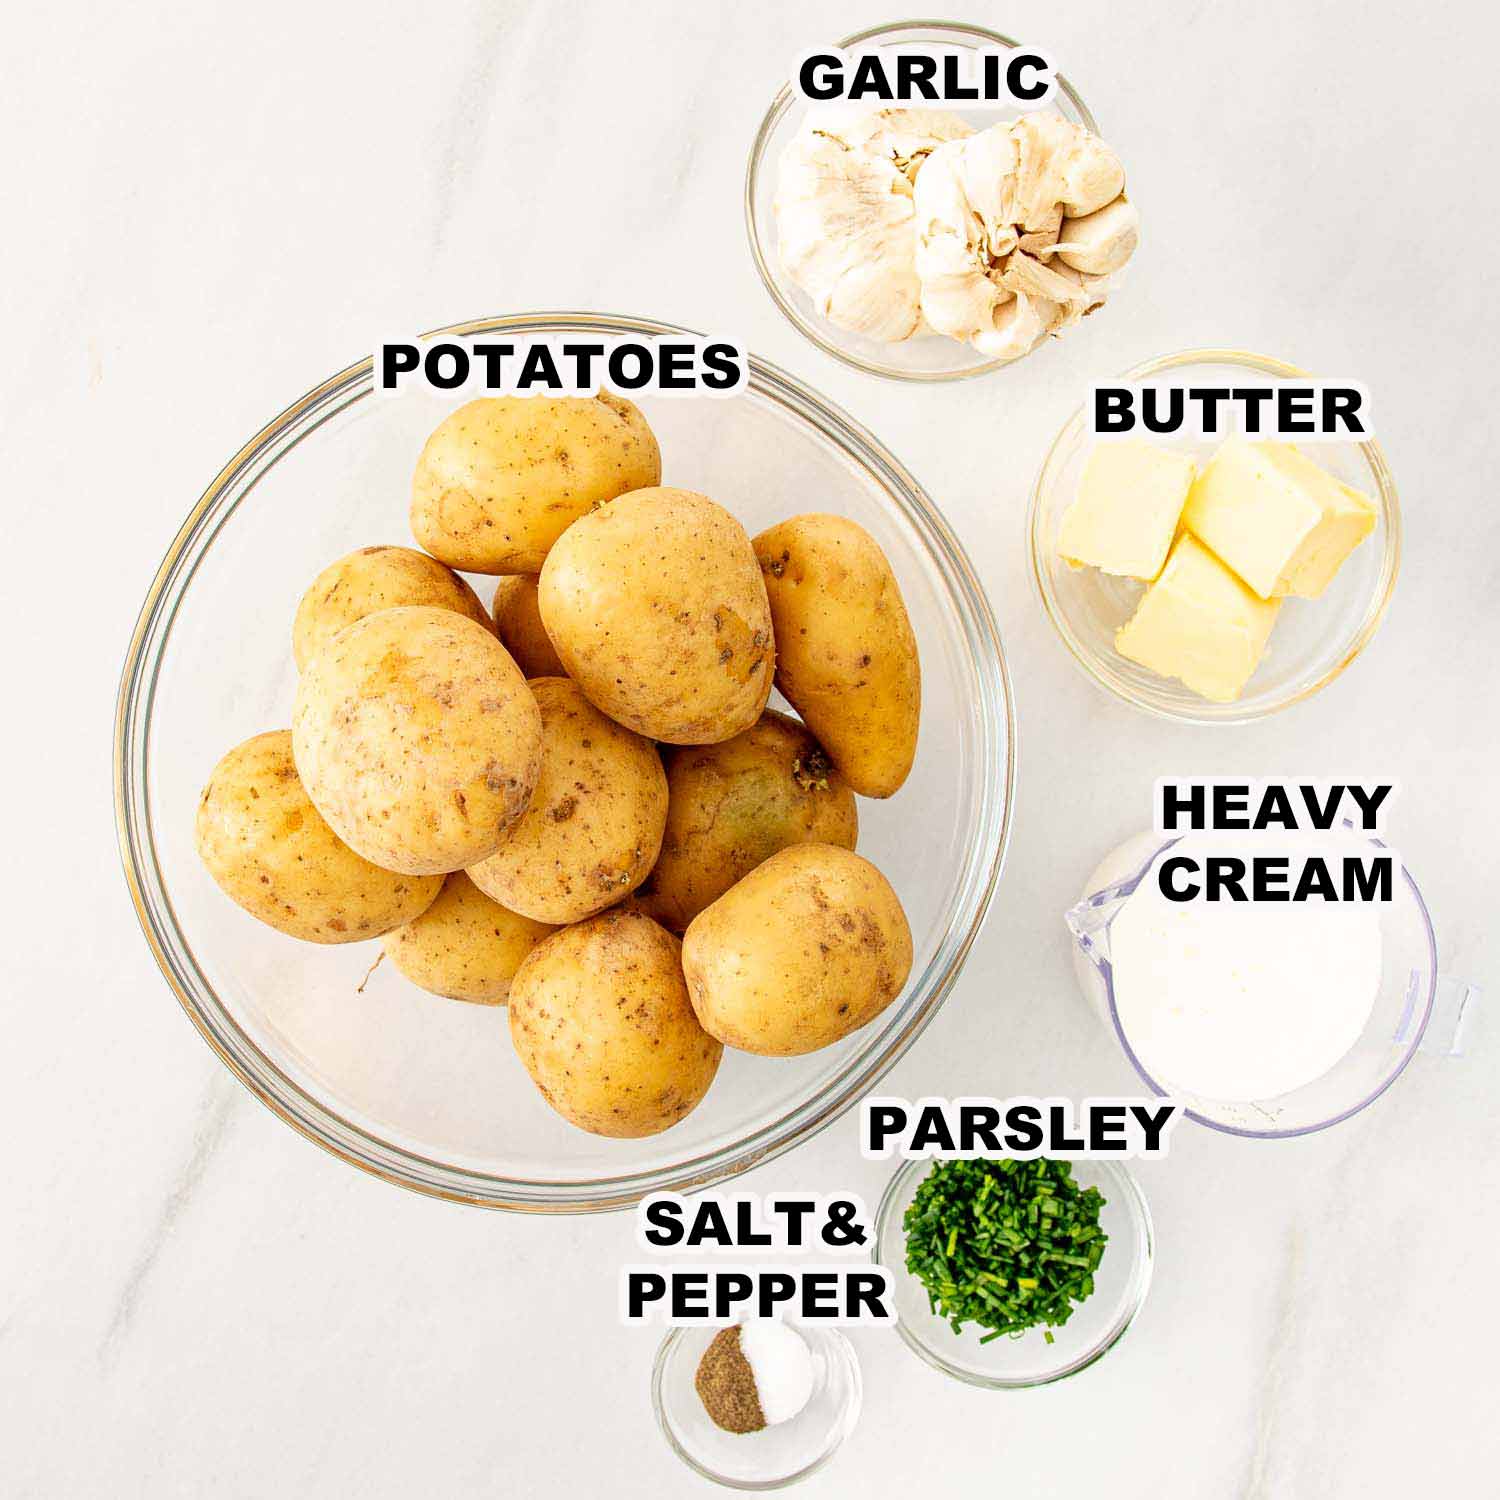 ingredients needed to make garlic mashed potatoes.